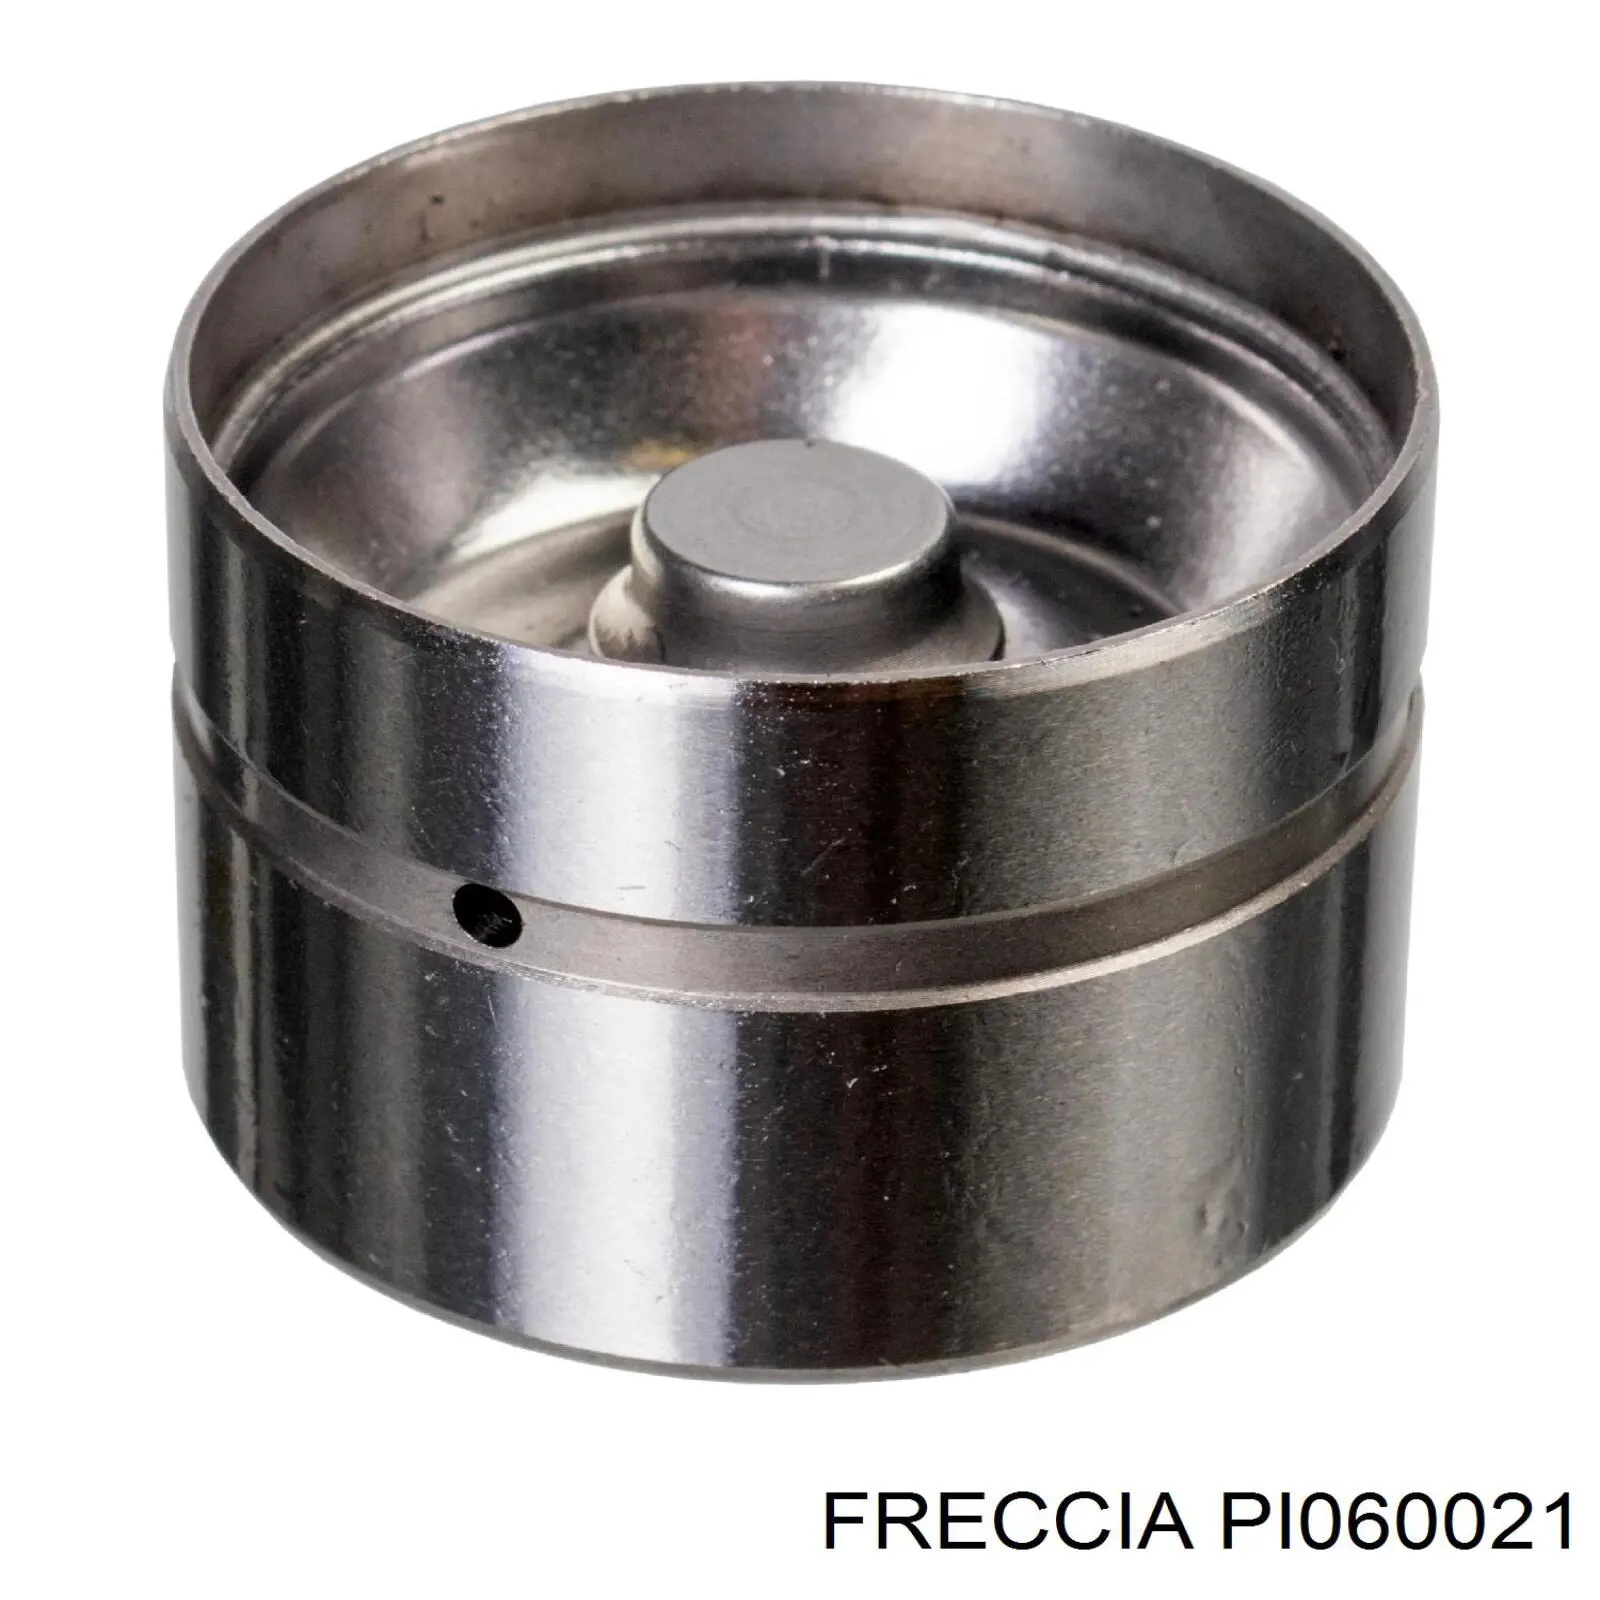 PI 06-0021 Freccia гидрокомпенсатор (гидротолкатель, толкатель клапанов)